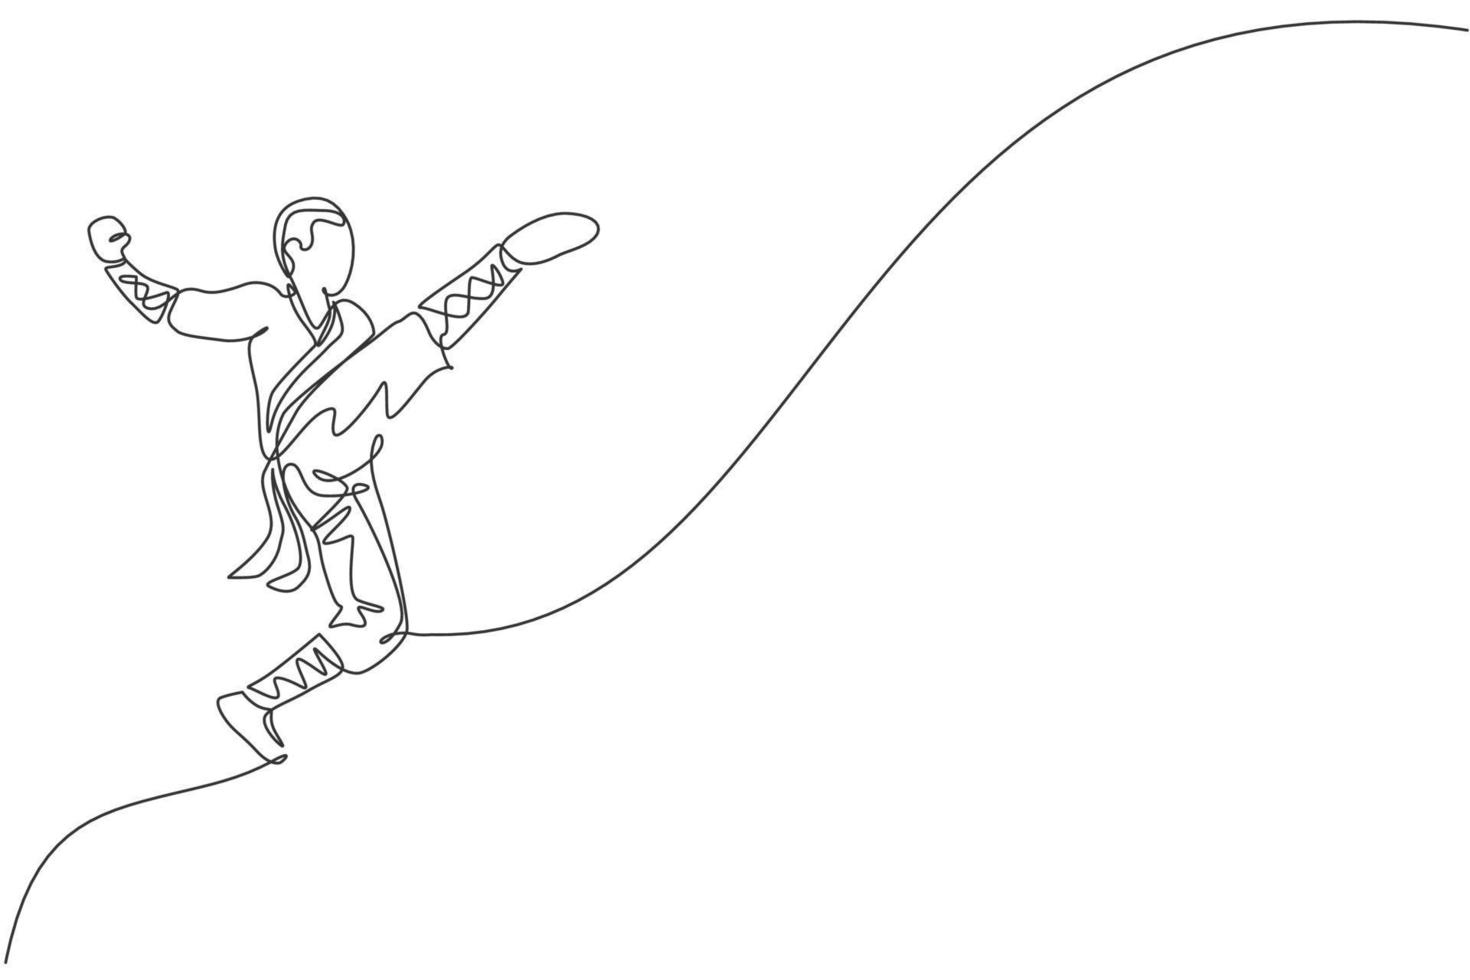 unico disegno a linea continua giovane muscoloso monaco shaolin uomo treno che salta calcio al tempio shaolin. concetto di lotta di kung fu cinese tradizionale. illustrazione vettoriale di design grafico di una linea alla moda